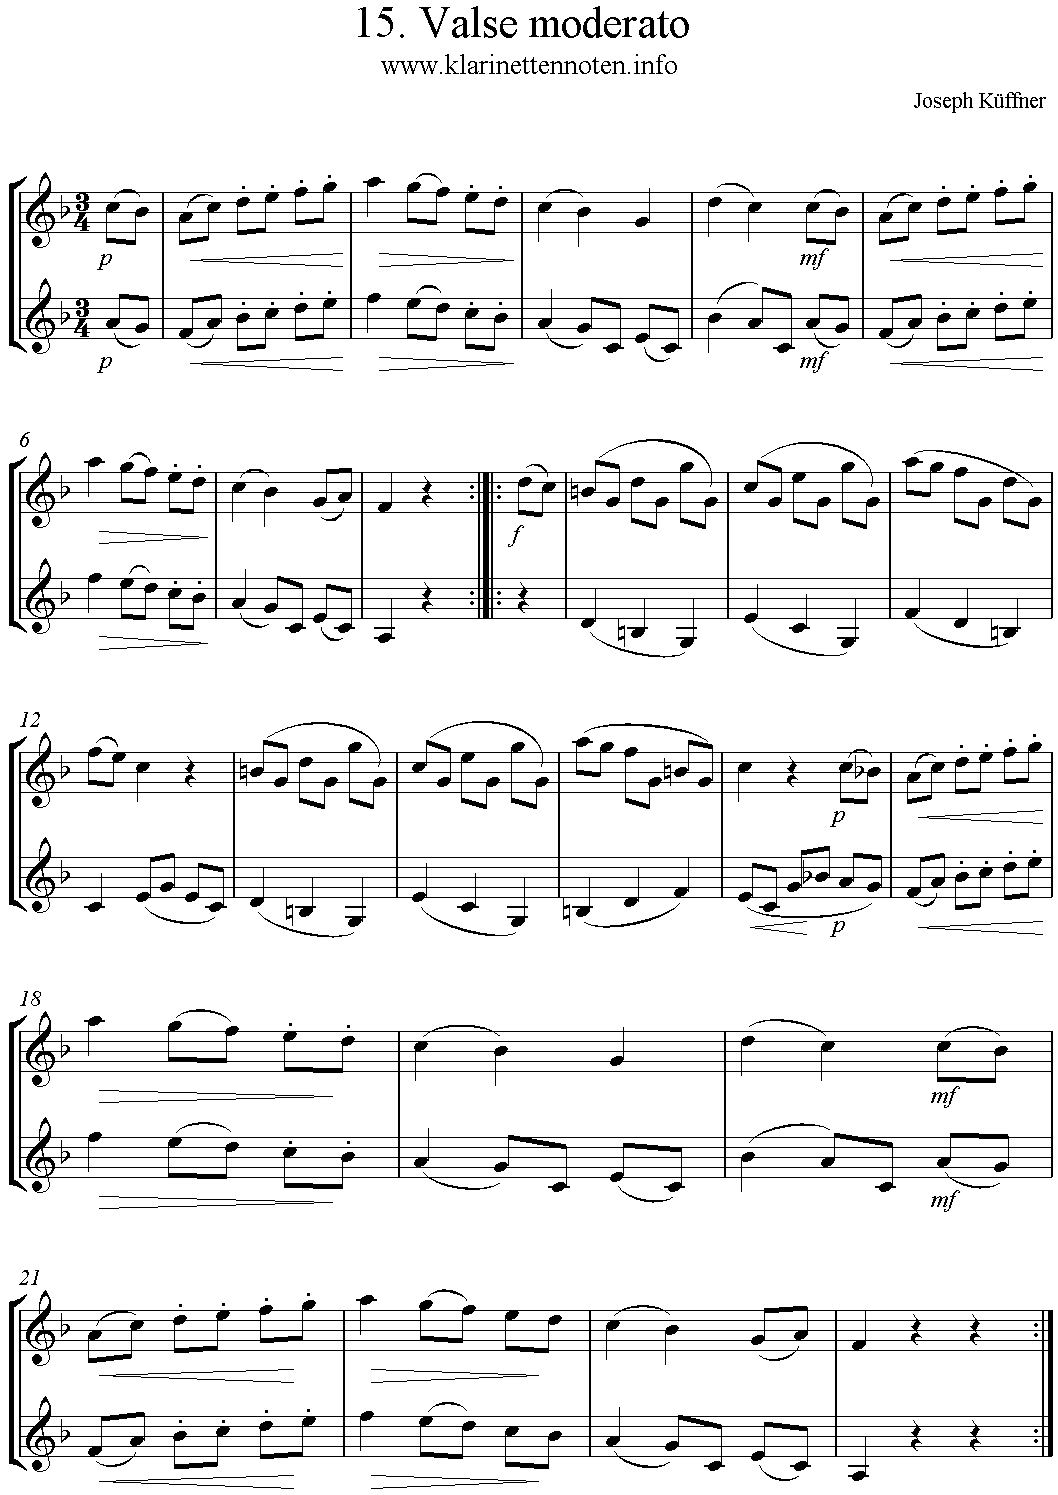 24 instruktive Duette- Joseph Küffner -15 Valse moderato